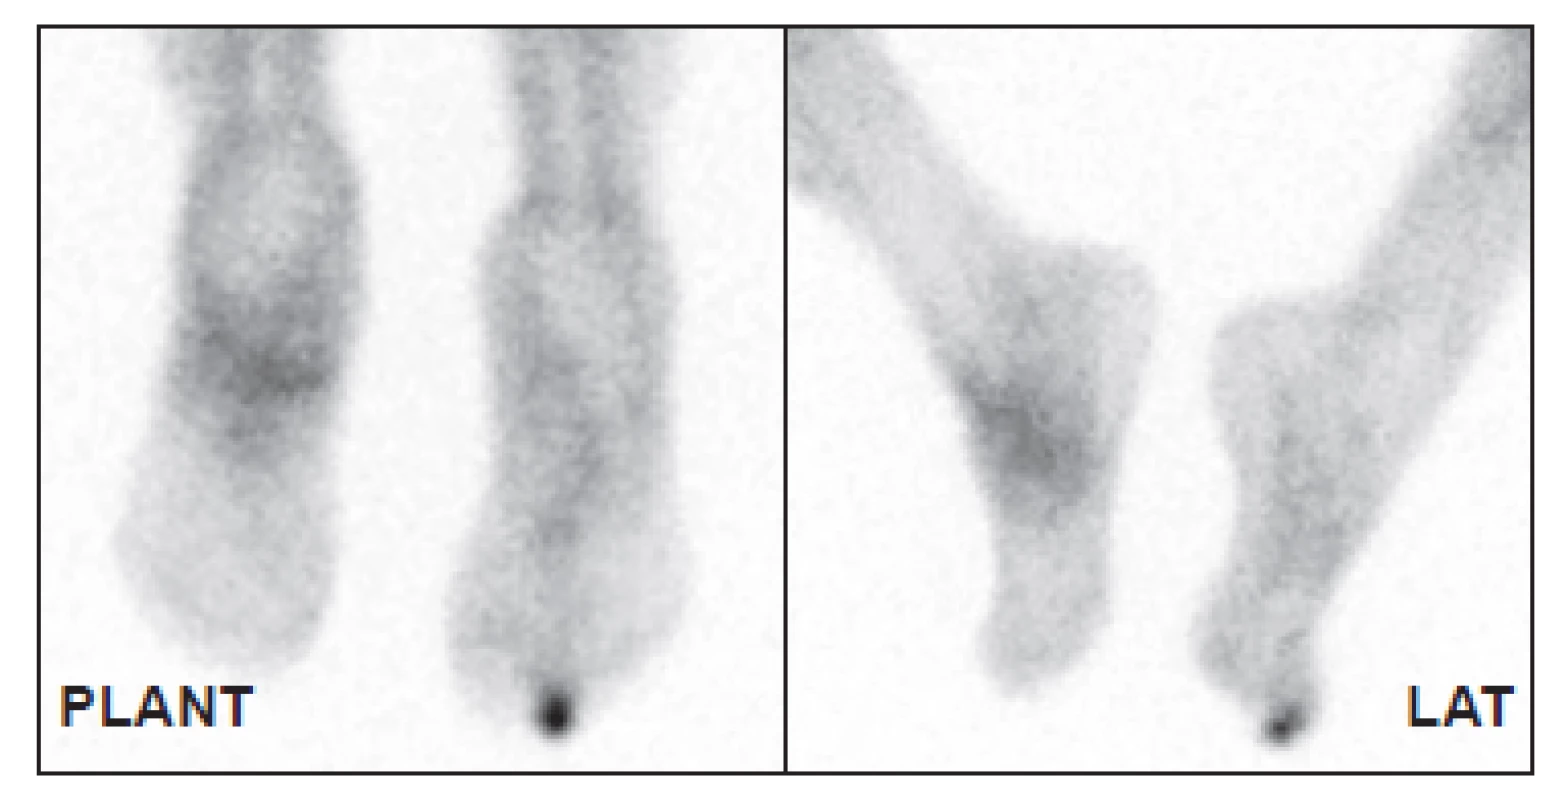 Distribuce značených leukocytů za 4 hodiny po aplikaci. Kromě
nártu je patrná zvýšená akumulace také v prstu pravé nohy. Z obrázku
je jasně patrné, že samotná scintigrafie neobsahuje anatomickou
informaci, určení správného prstu tedy není pouze z obrazu možné.